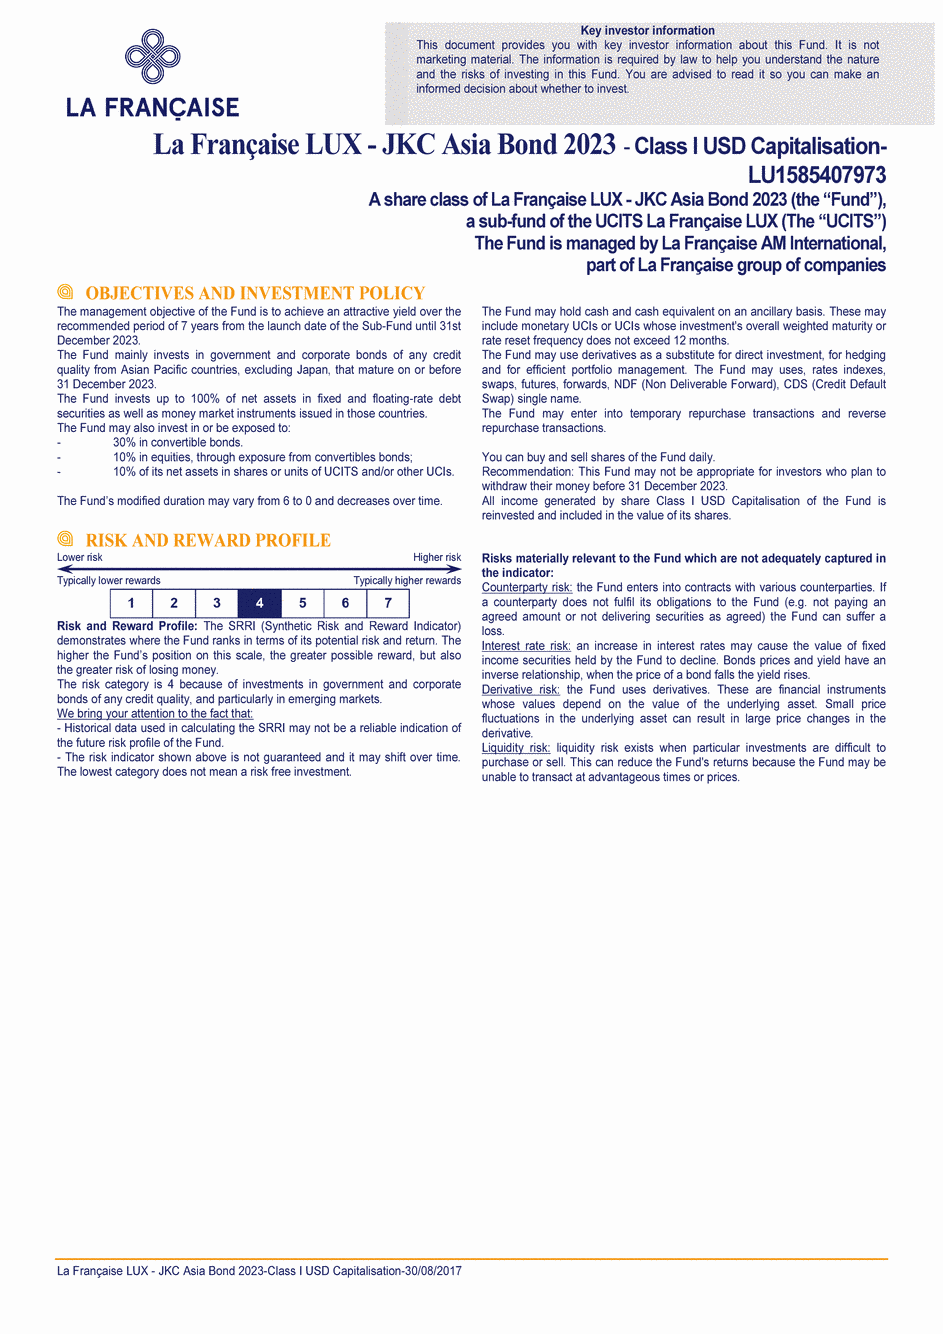 DICI La Française LUX - JKC Asia Bond 2023 - Class I (C) USD - 30/08/2017 - Anglais